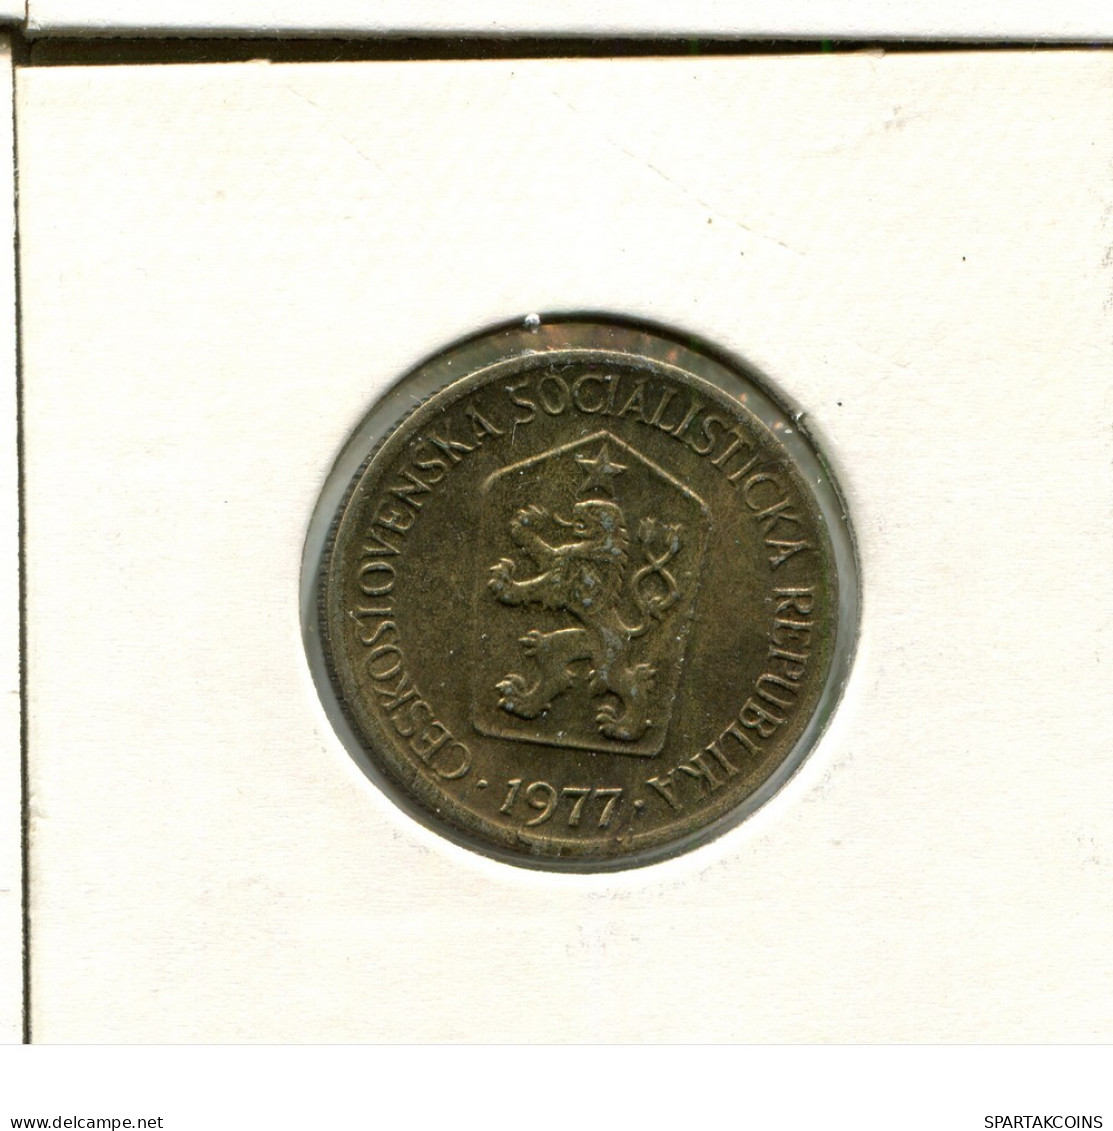 1 KORUNA 1977 TSCHECHOSLOWAKEI CZECHOSLOWAKEI SLOVAKIA Münze #AS967.D.A - Tsjechoslowakije